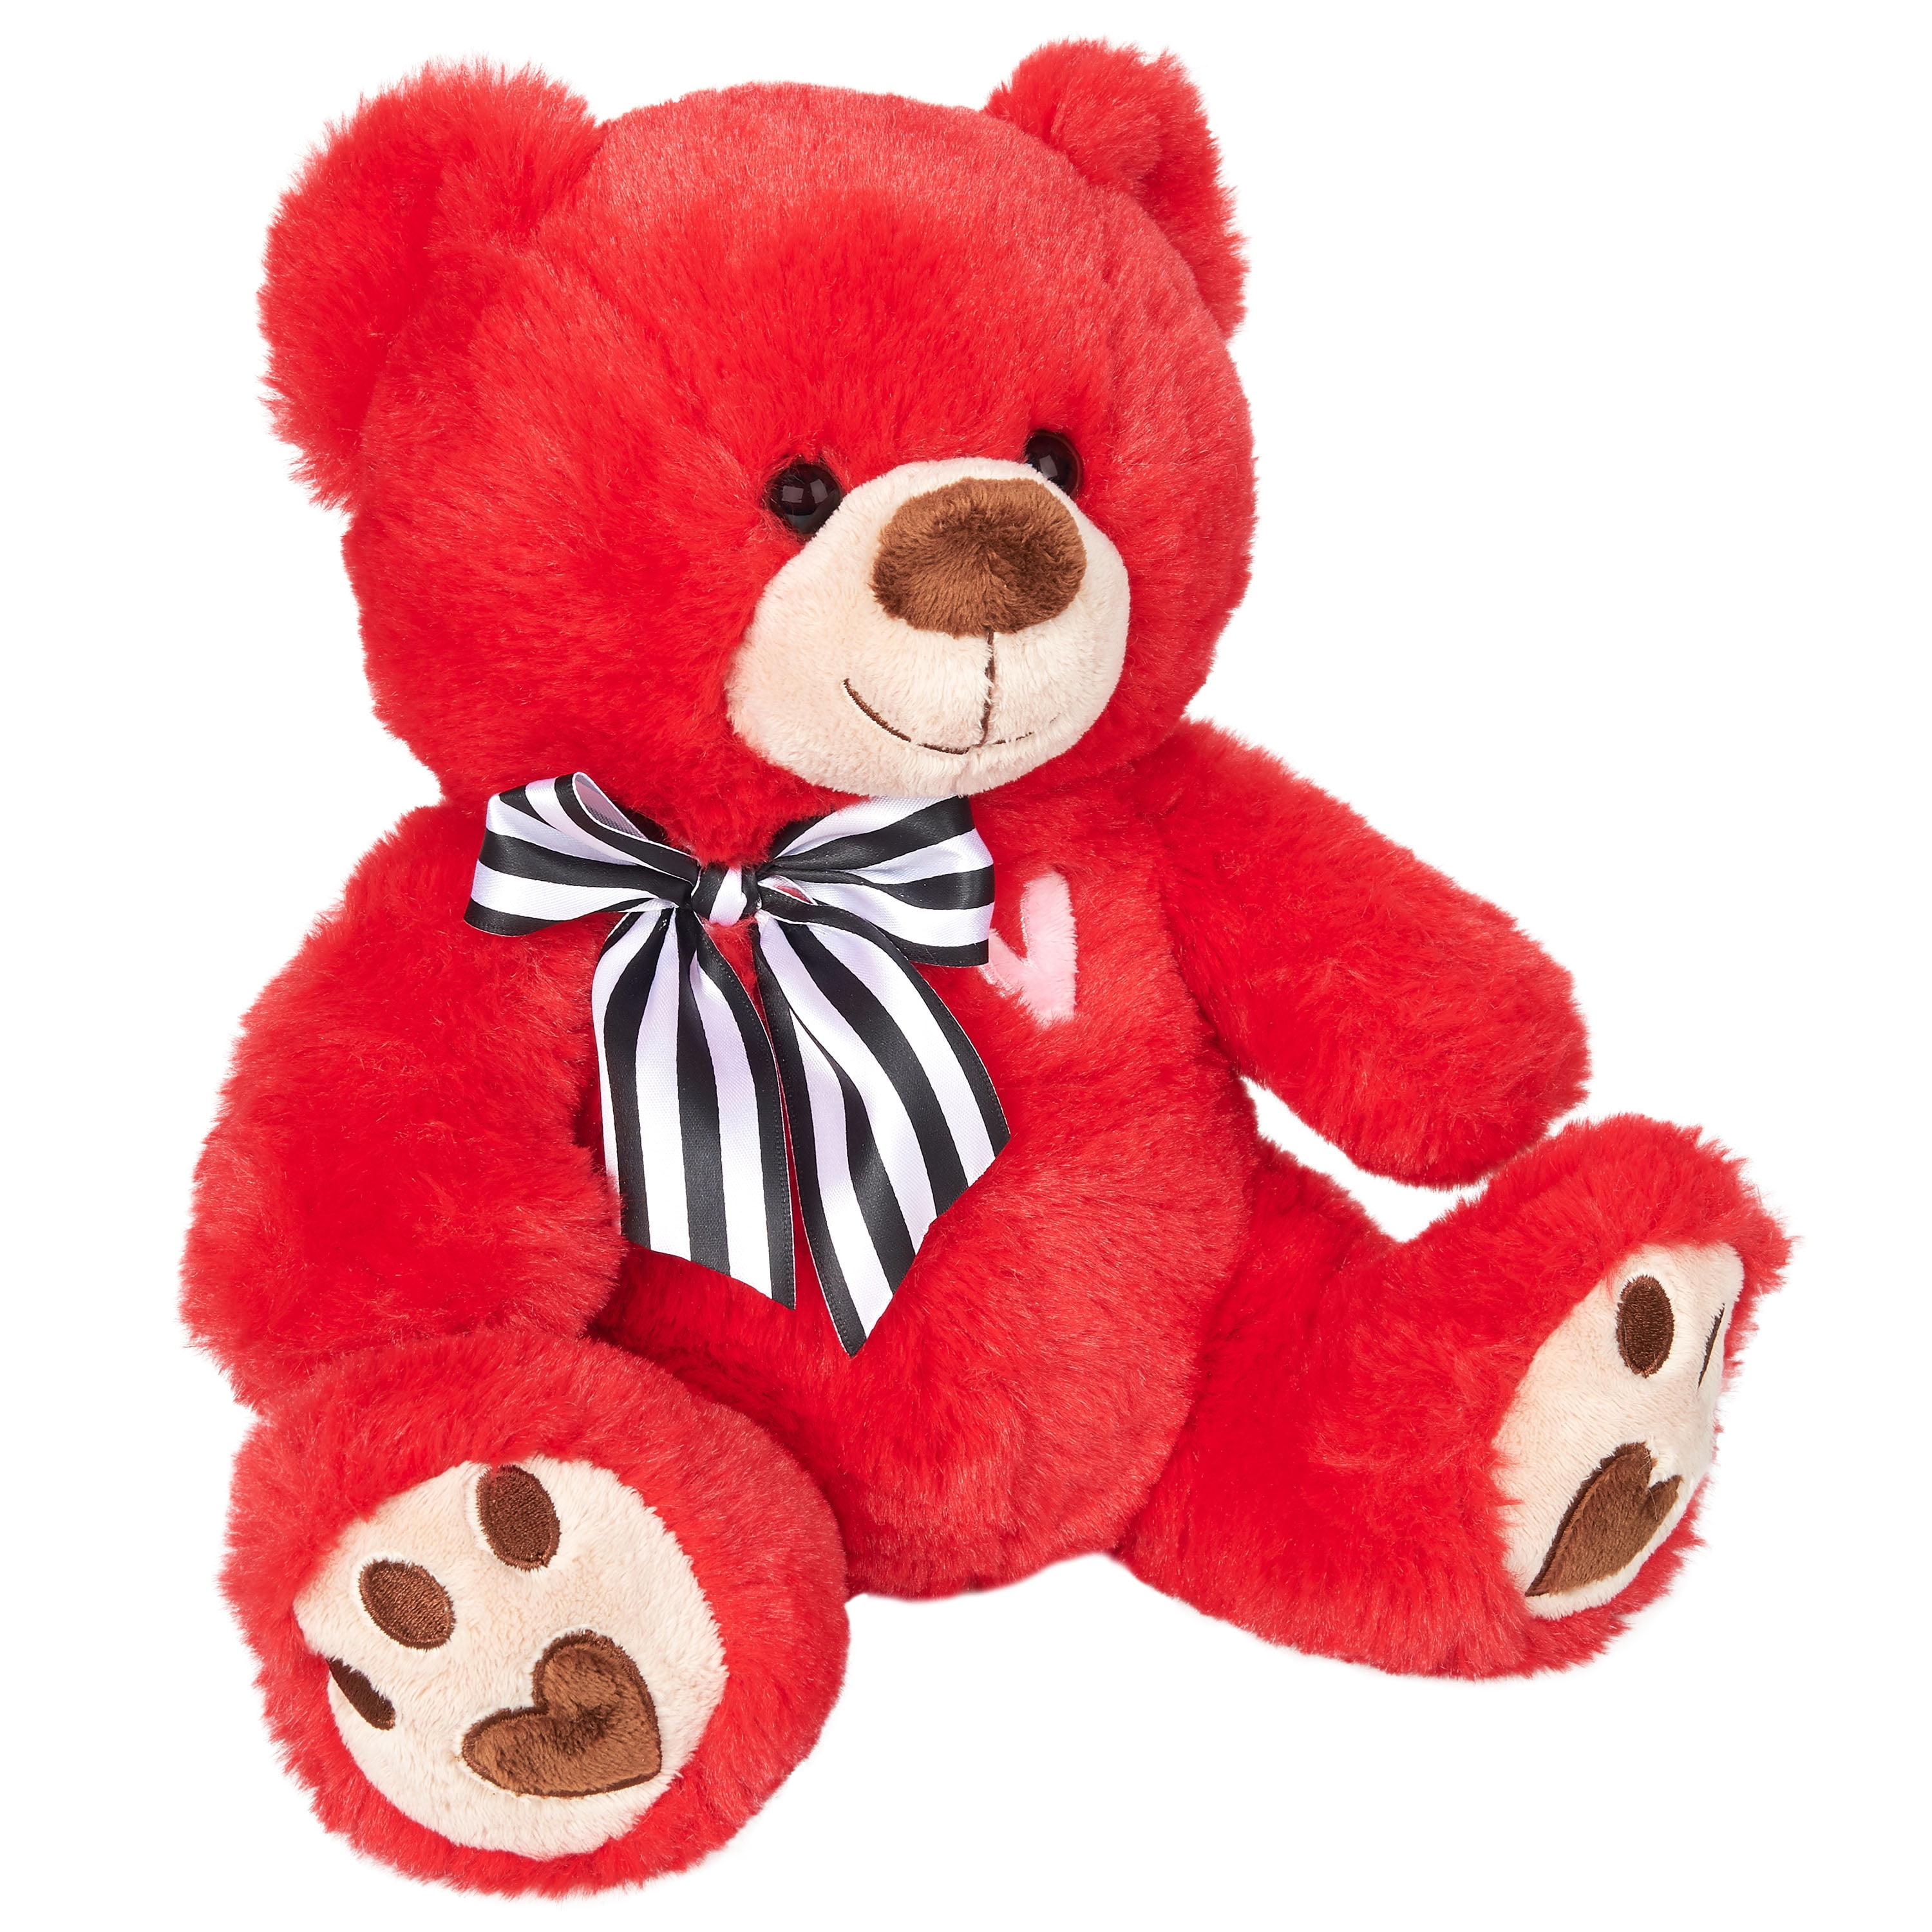 Toys медведь. Красный медведь игрушка. Красные плюшевые игрушки. Красный плюшевый мишка. Красный плюшевый медведь.